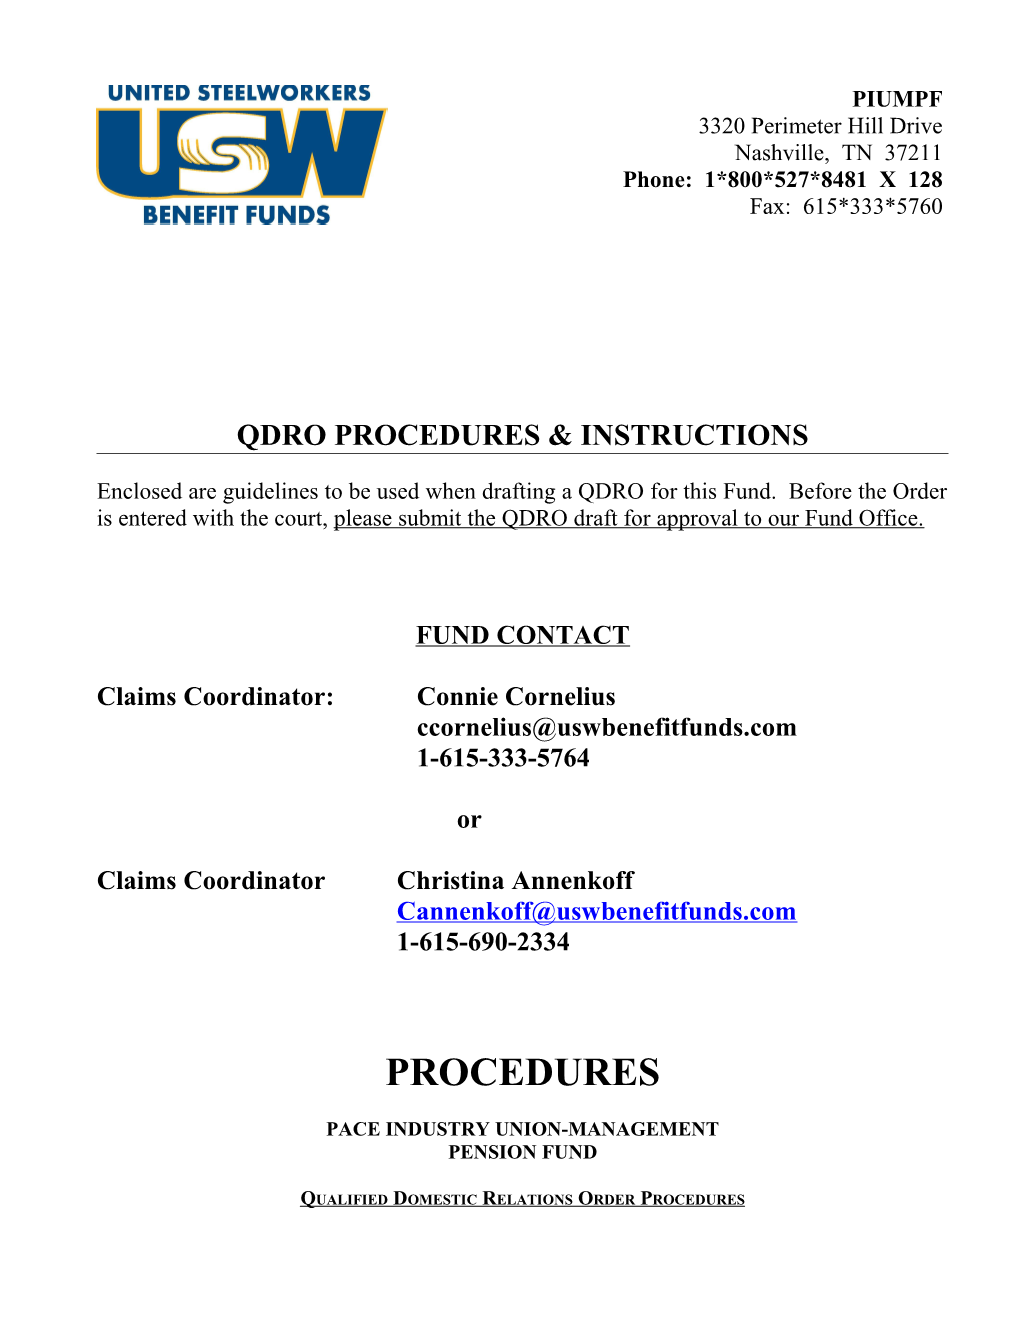 Qdro Procedures & Instructions